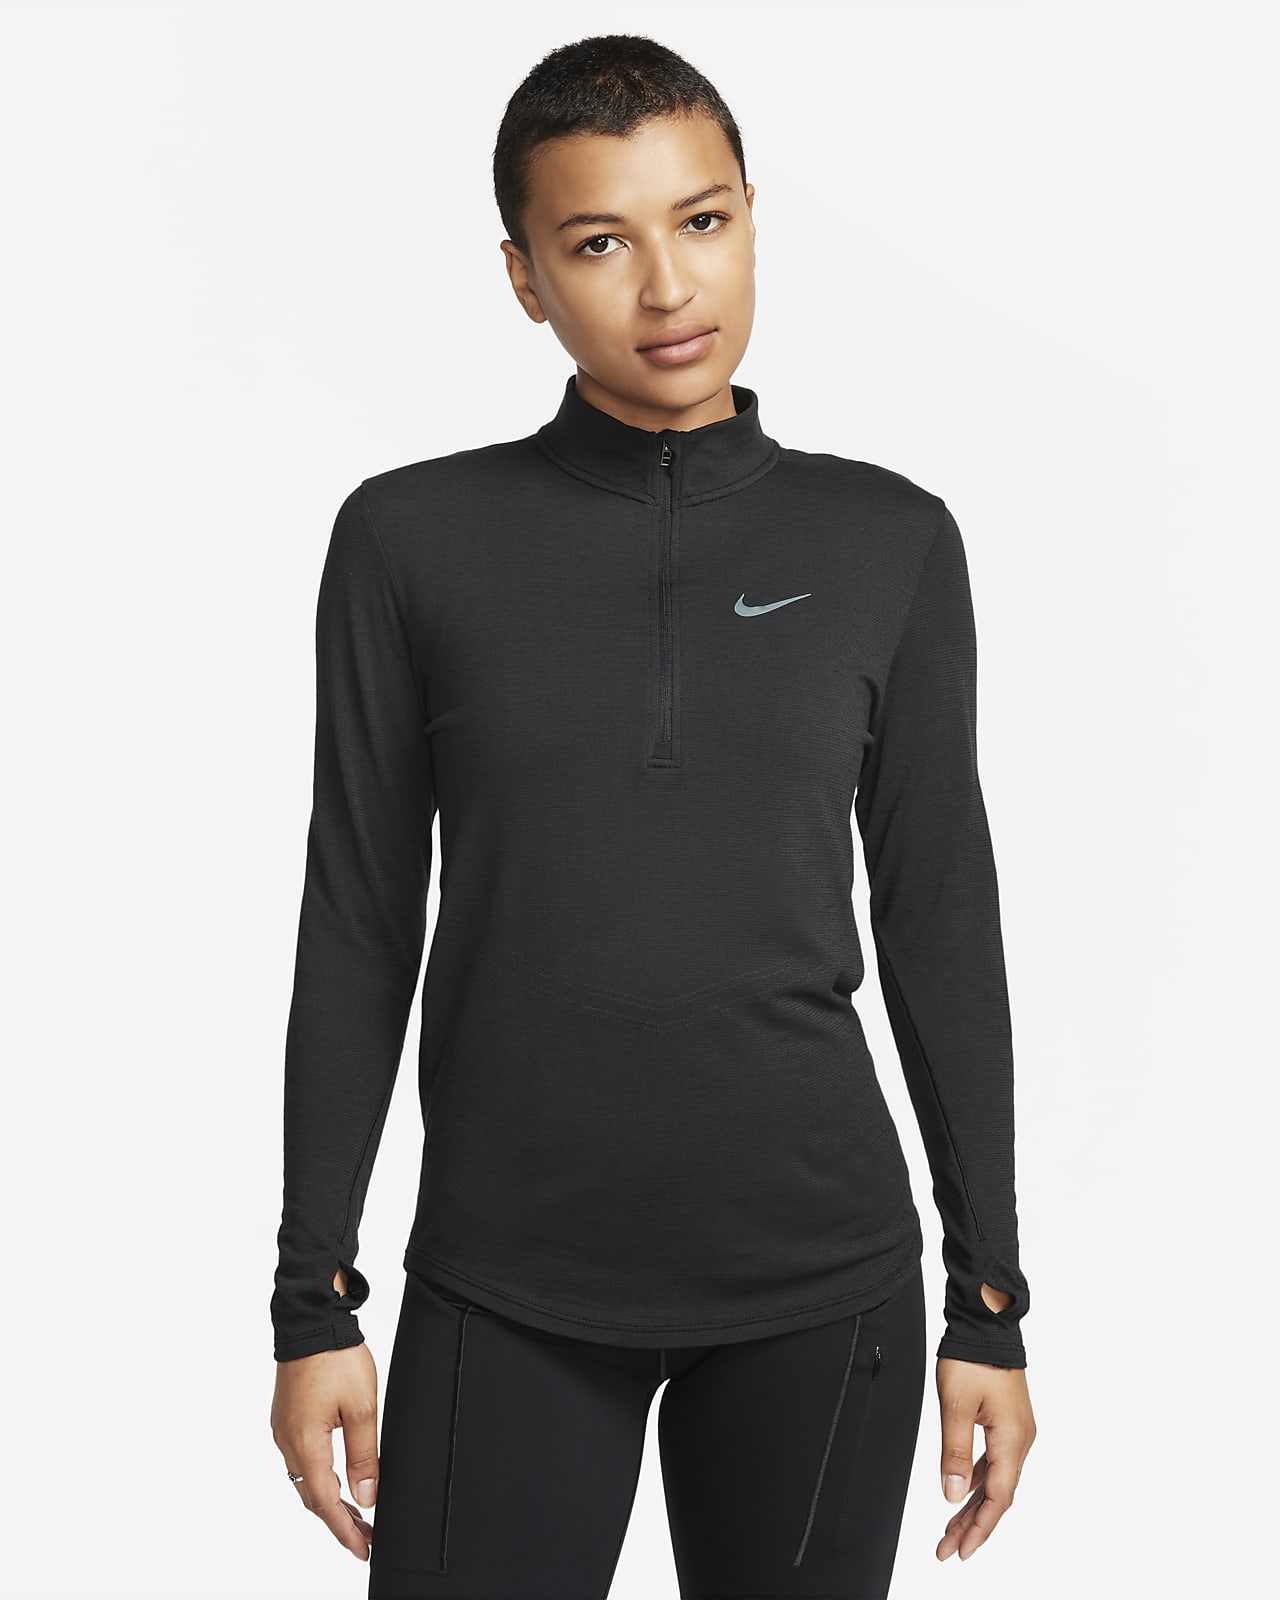 Damska koszulka z długim rękawem z wełny do biegania Nike Dri-FIT Swift